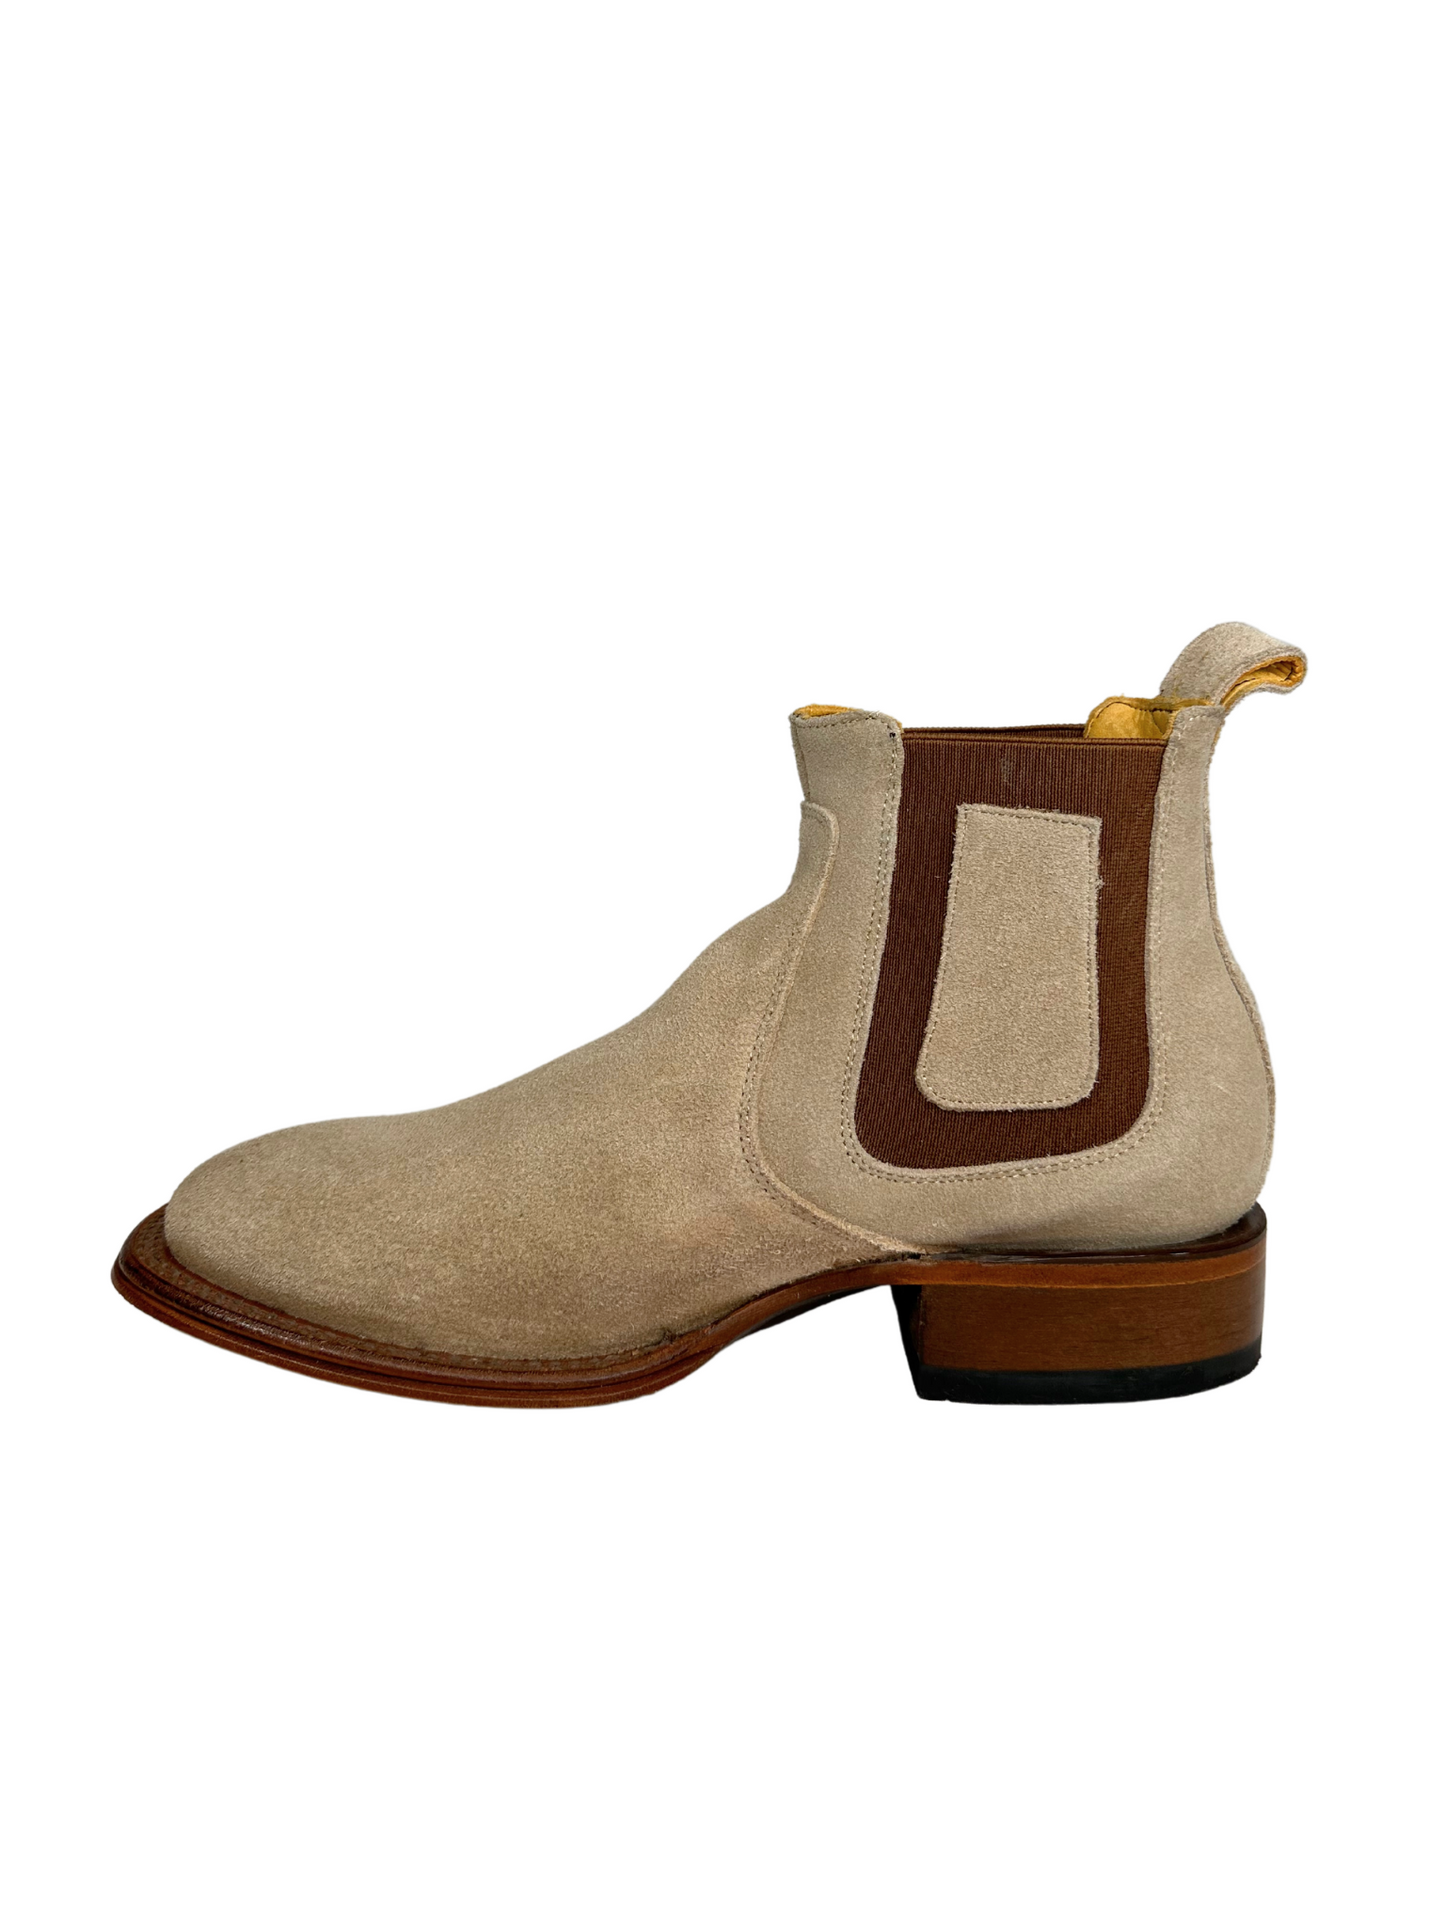 Quincy Men's Suede Leather Short Boot - Bone